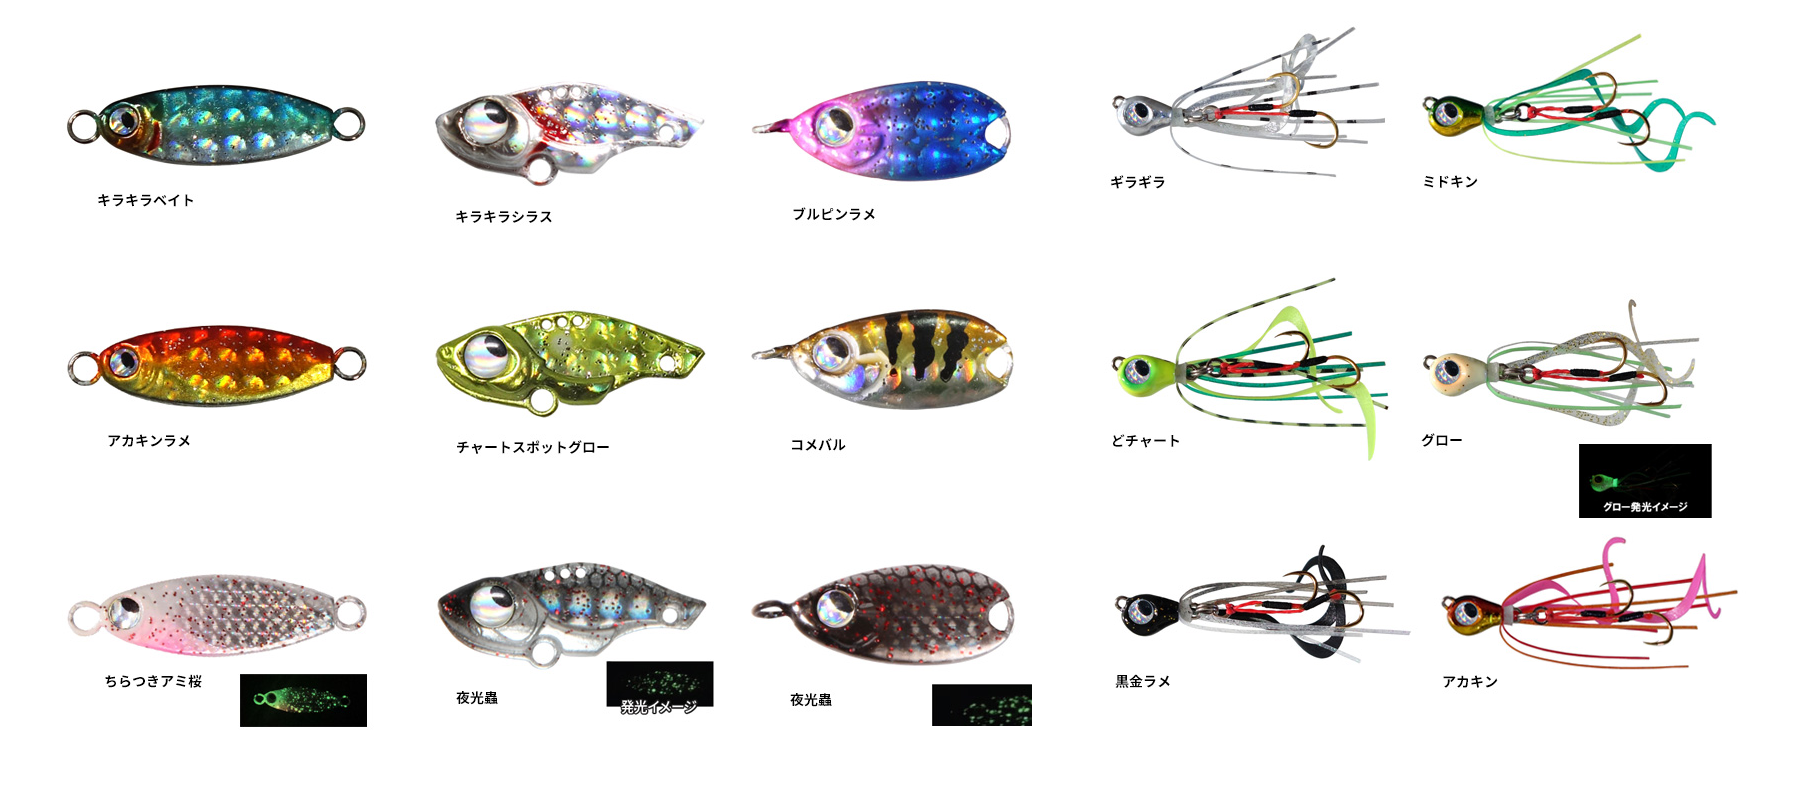 【新品12個】ルーディーズ 魚子ラバ 魚子メタル 魚子メタルひらり 魚子バイブ